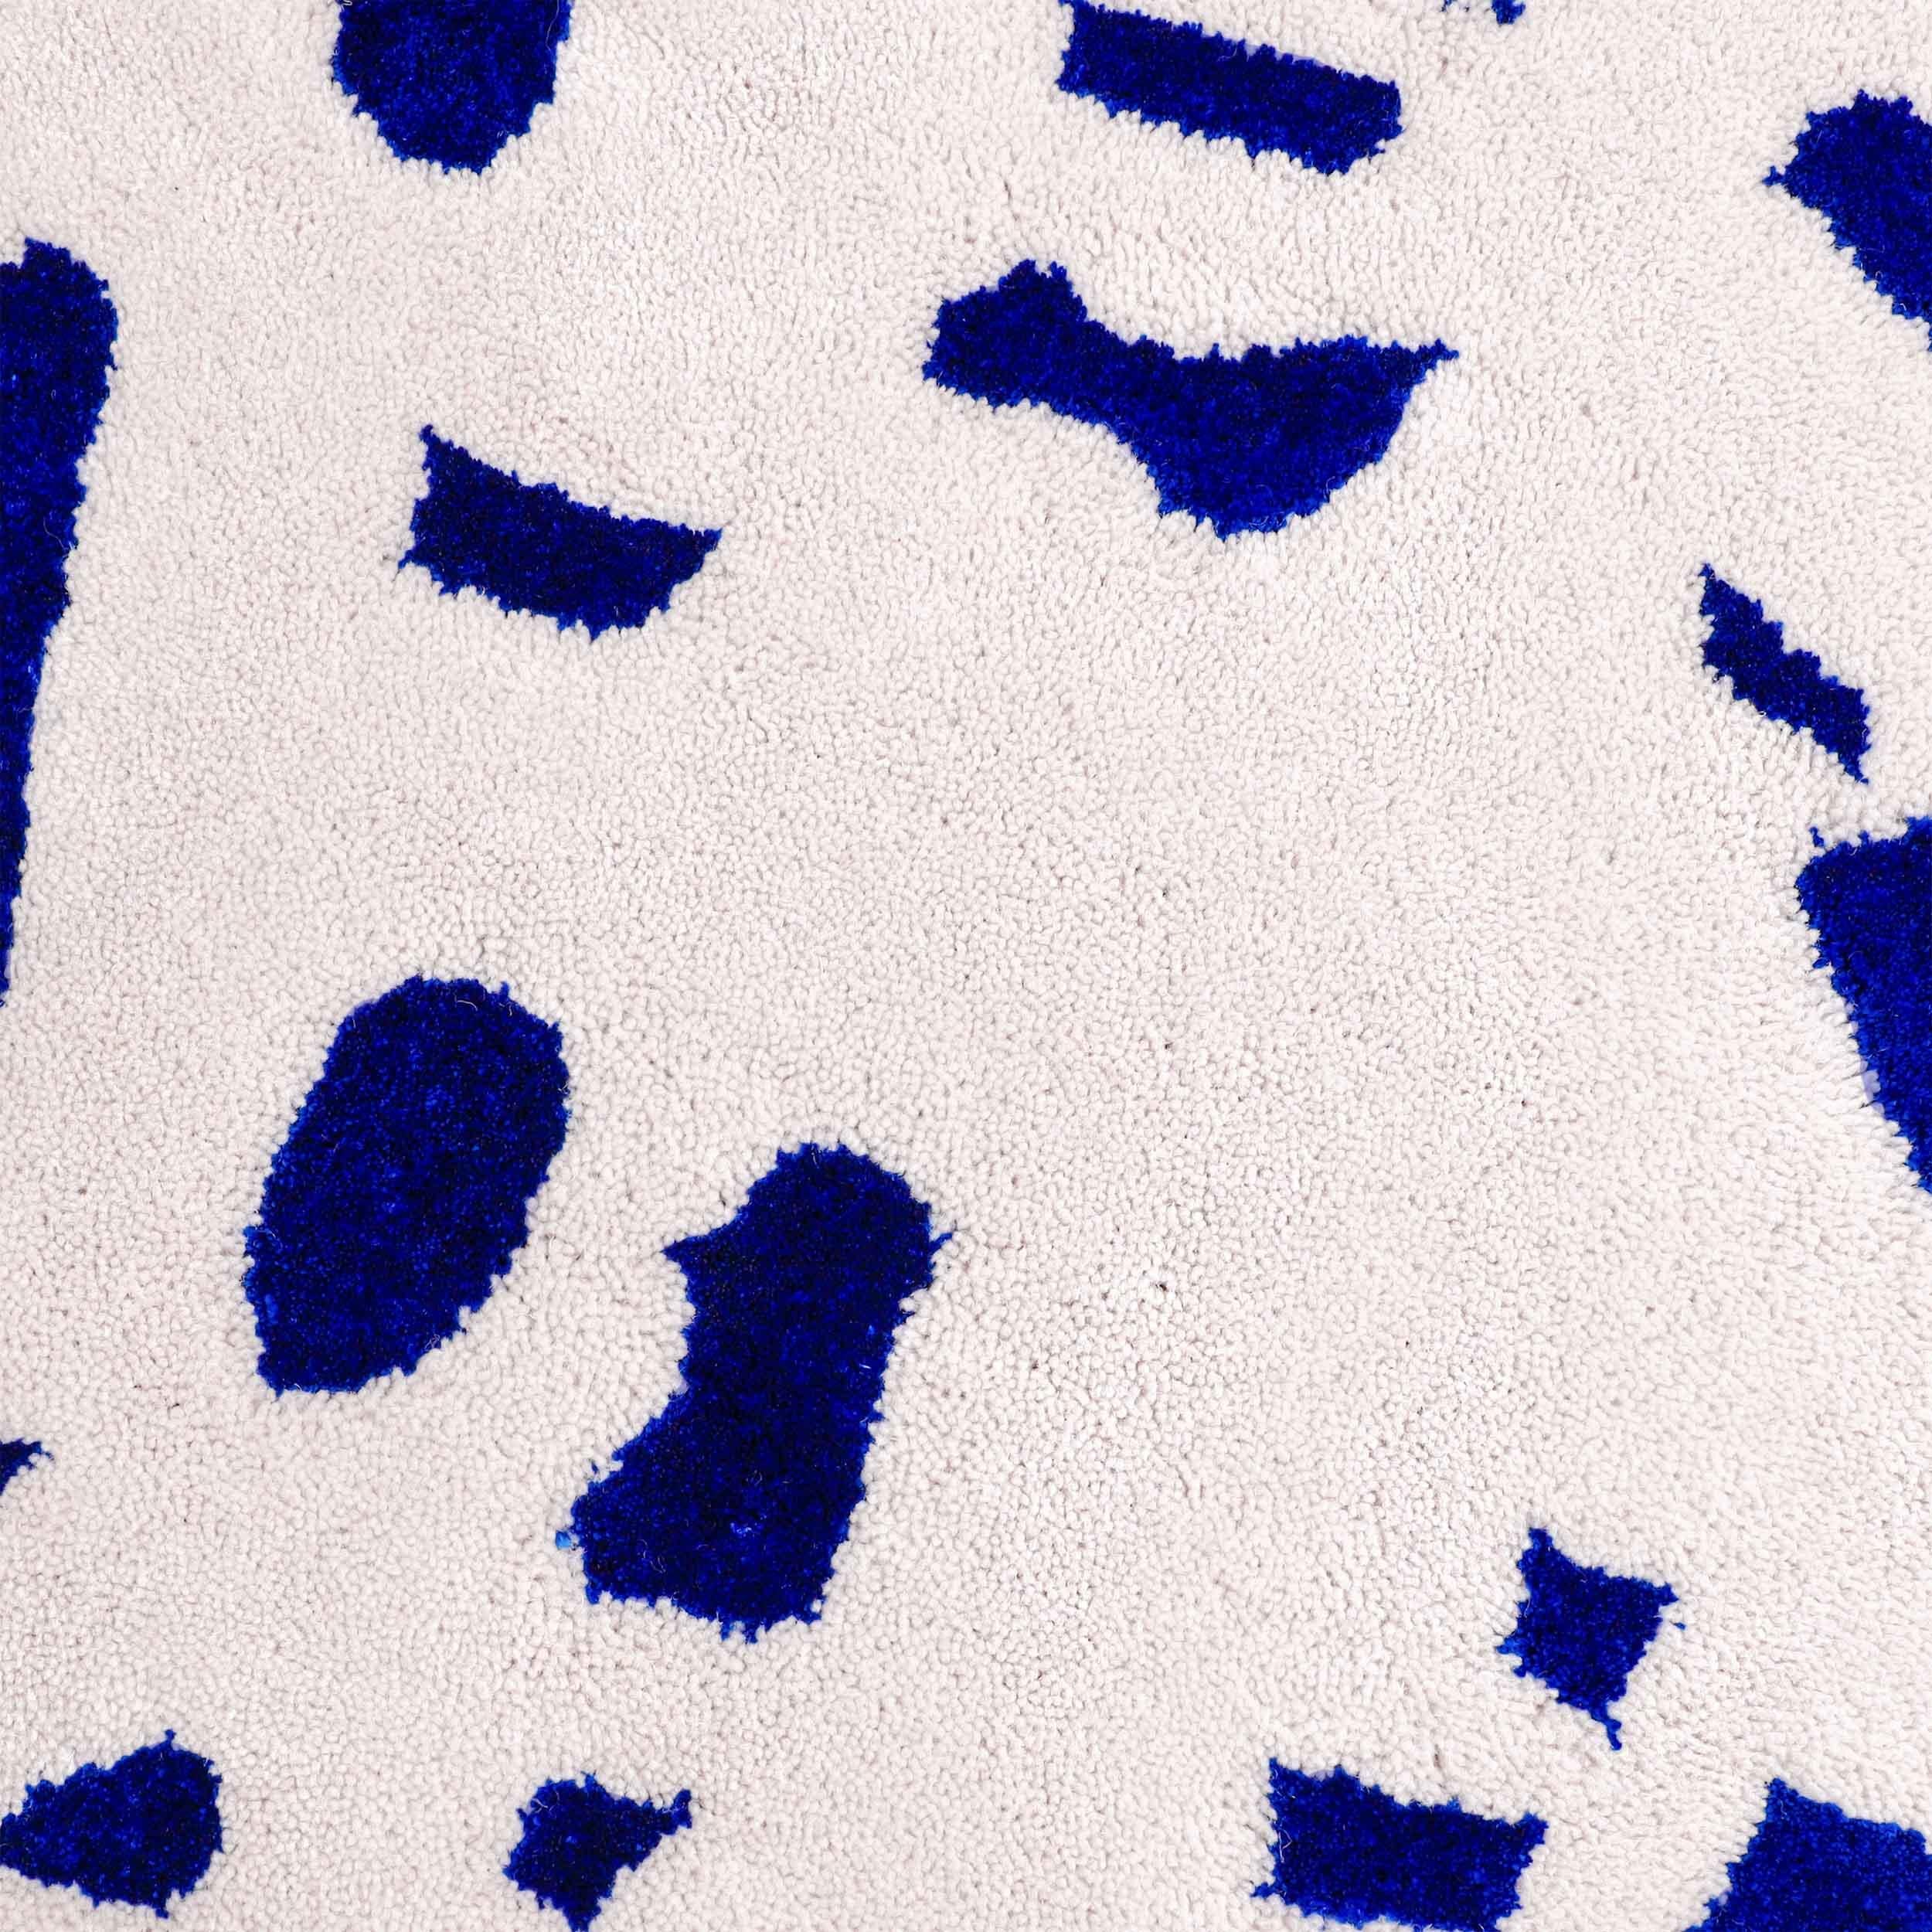 Speckled squiggle hat eine strapazierfähige Wolloberfläche mit einem Muster aus glänzenden blauen Viskose-Sprenkeln.

Größe: 4,5 x 6,5 Fuß 
MATERIAL: Wolle + Viskose
Farbe: Off-White/hellgrau + Electric Blue*
Hergestellt in Schweden

*Farben können